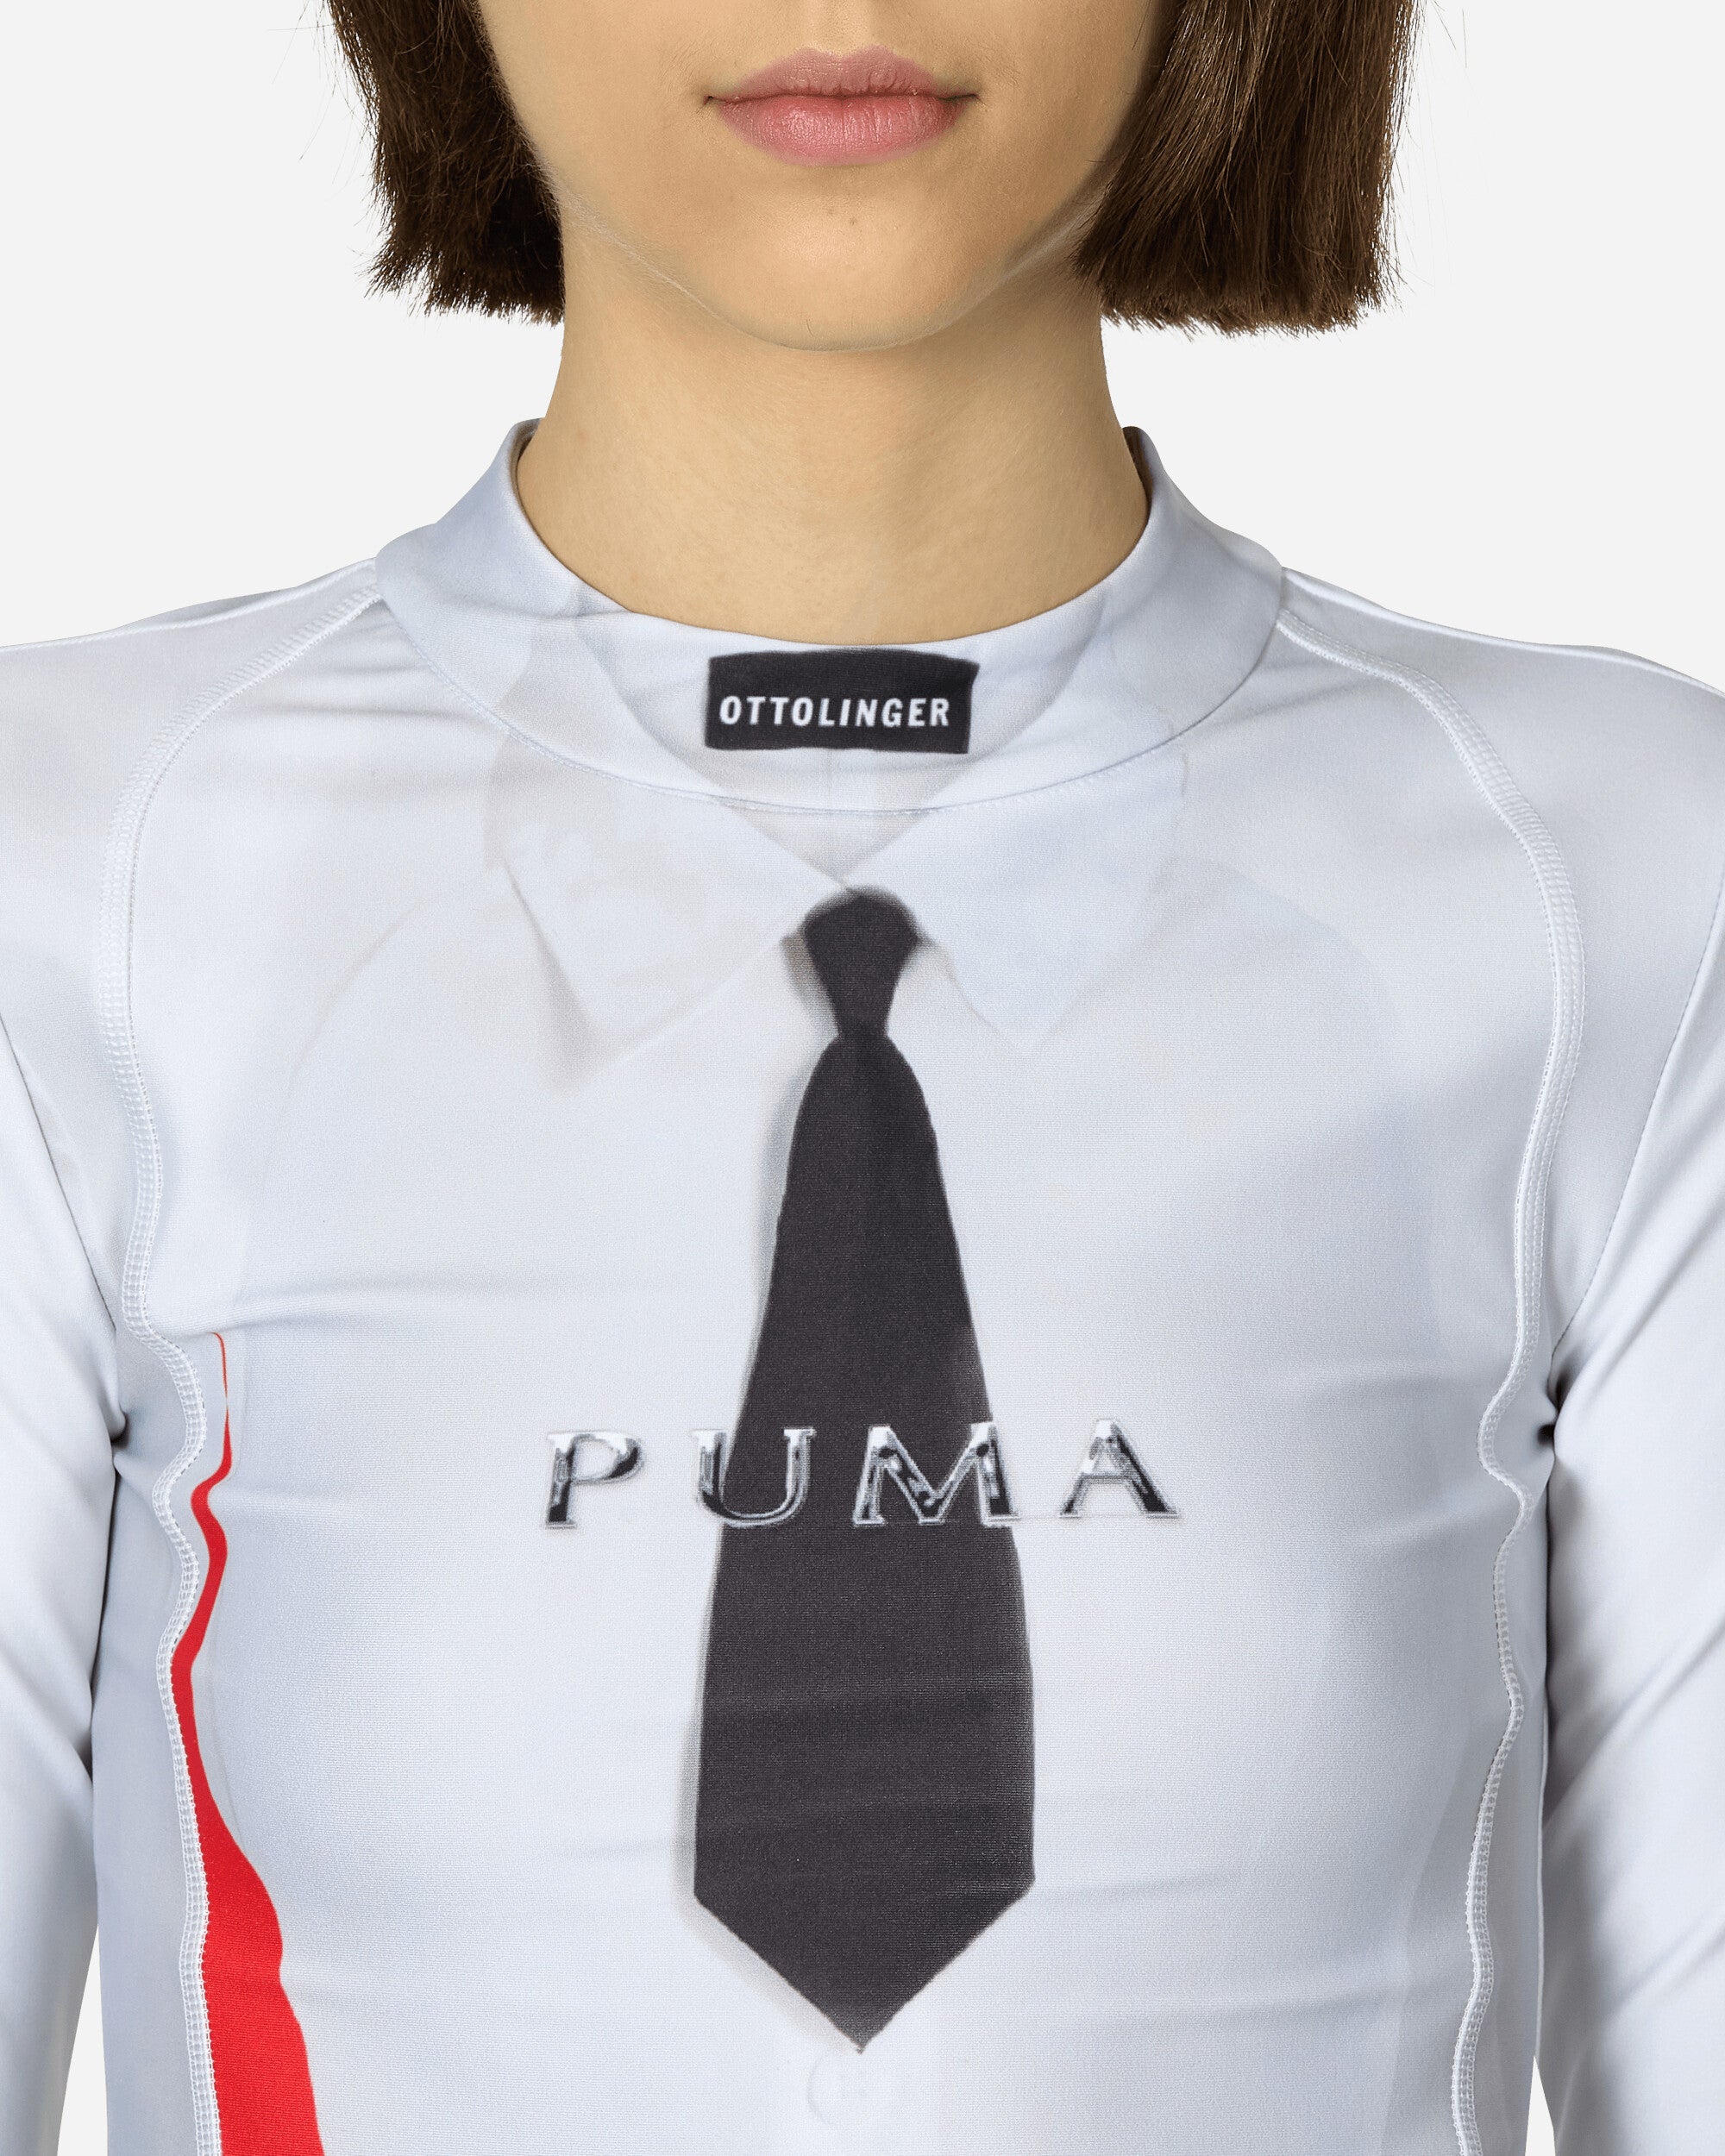 Ottolinger Wmns Puma X Ottolinger Slim Longsleeve Puma White Puwt T-Shirts Longsleeve 625752 02